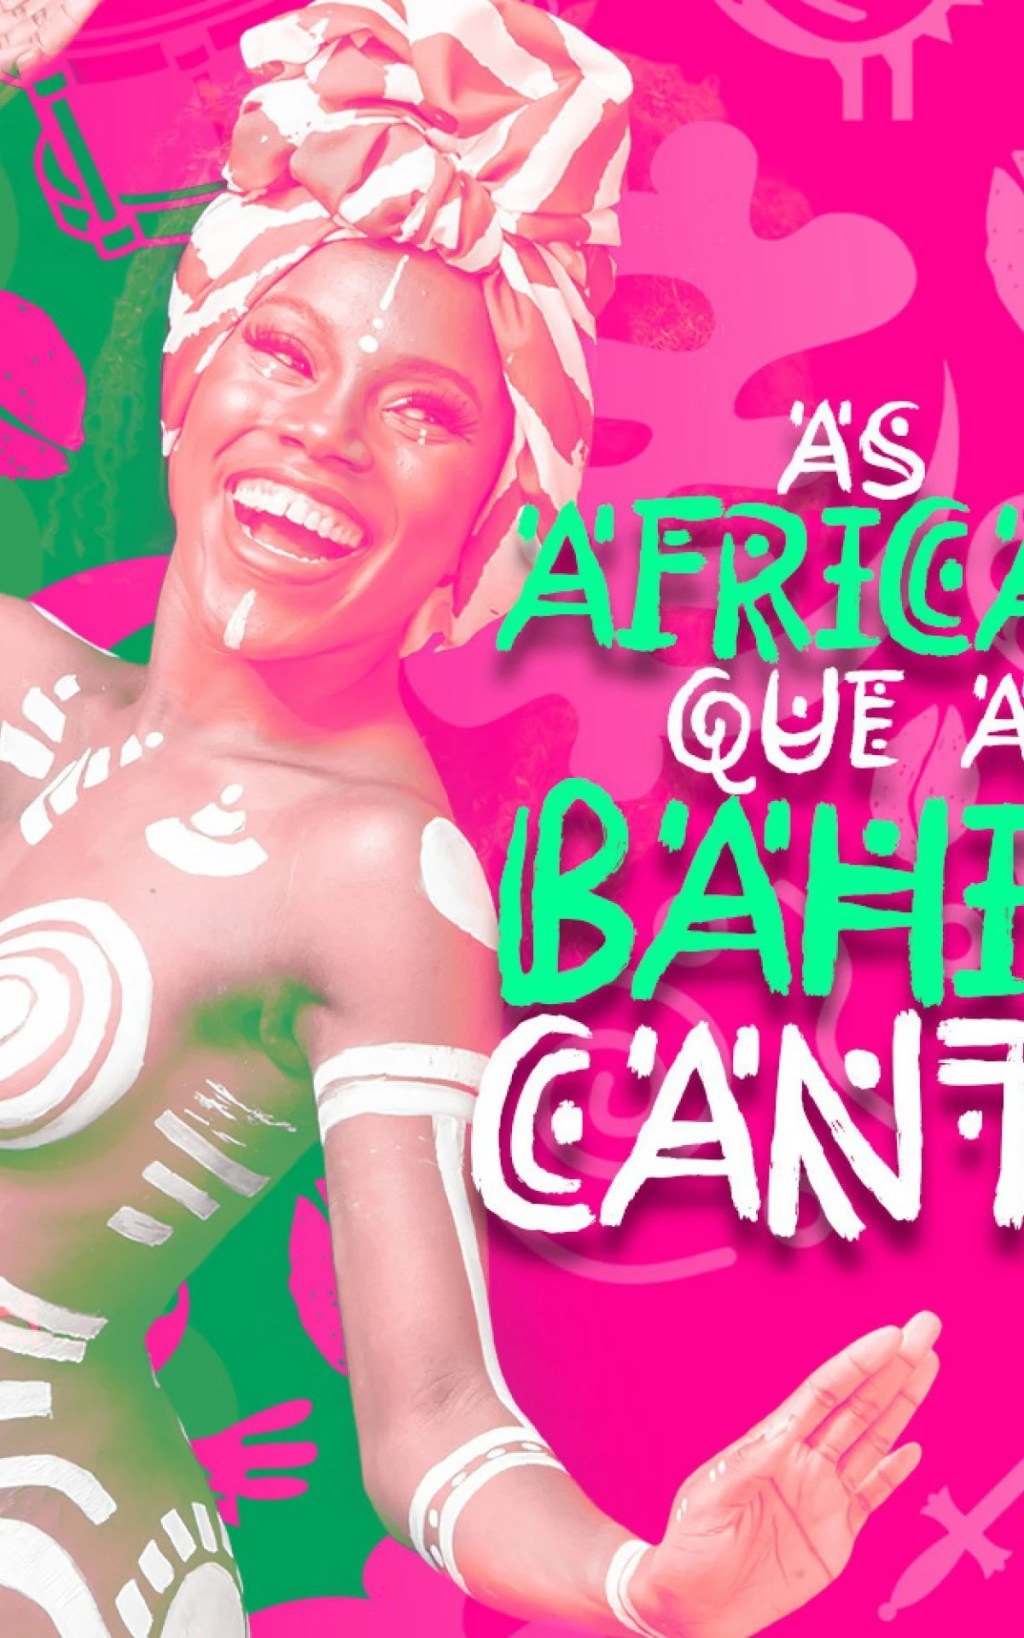 Mangueira anuncia enredo para o Carnaval 2023Agremiação abordará passagens da história preta do carnaval pouco difundidas nas construções cronológicas da festa